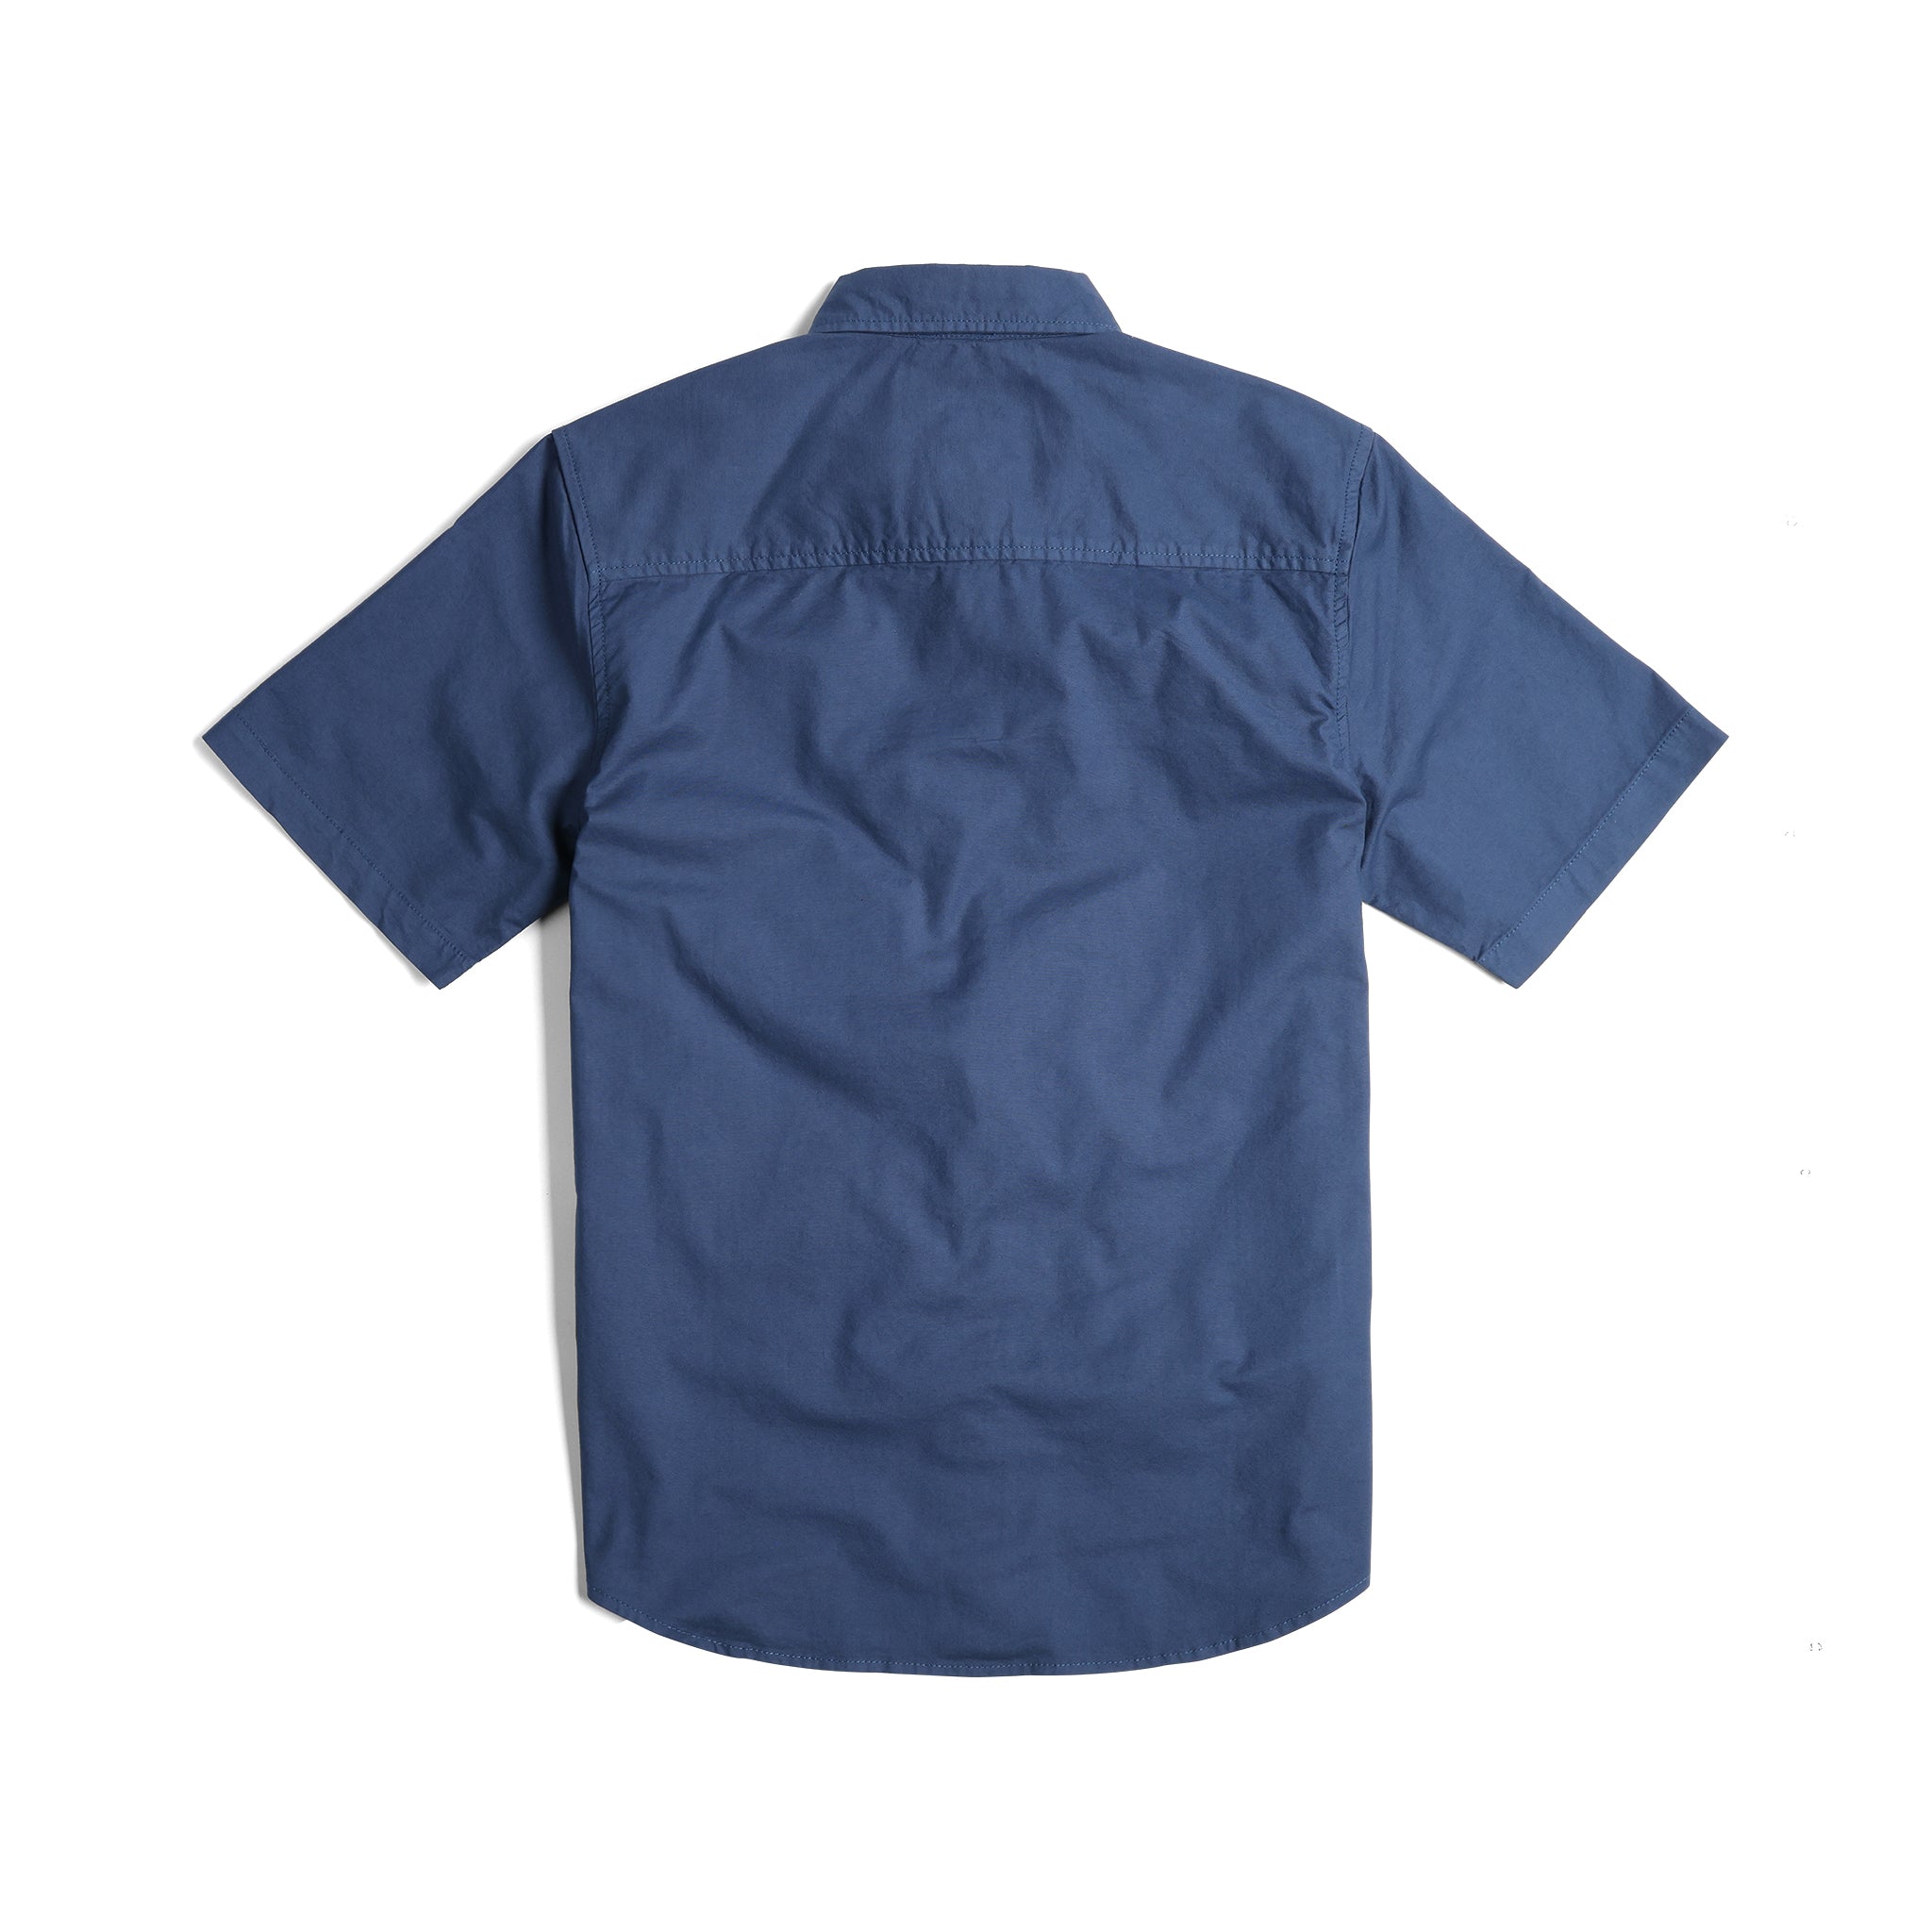 Back View of Topo Designs Dirt Desert Shirt Ss - Men's in "Dark Denim"